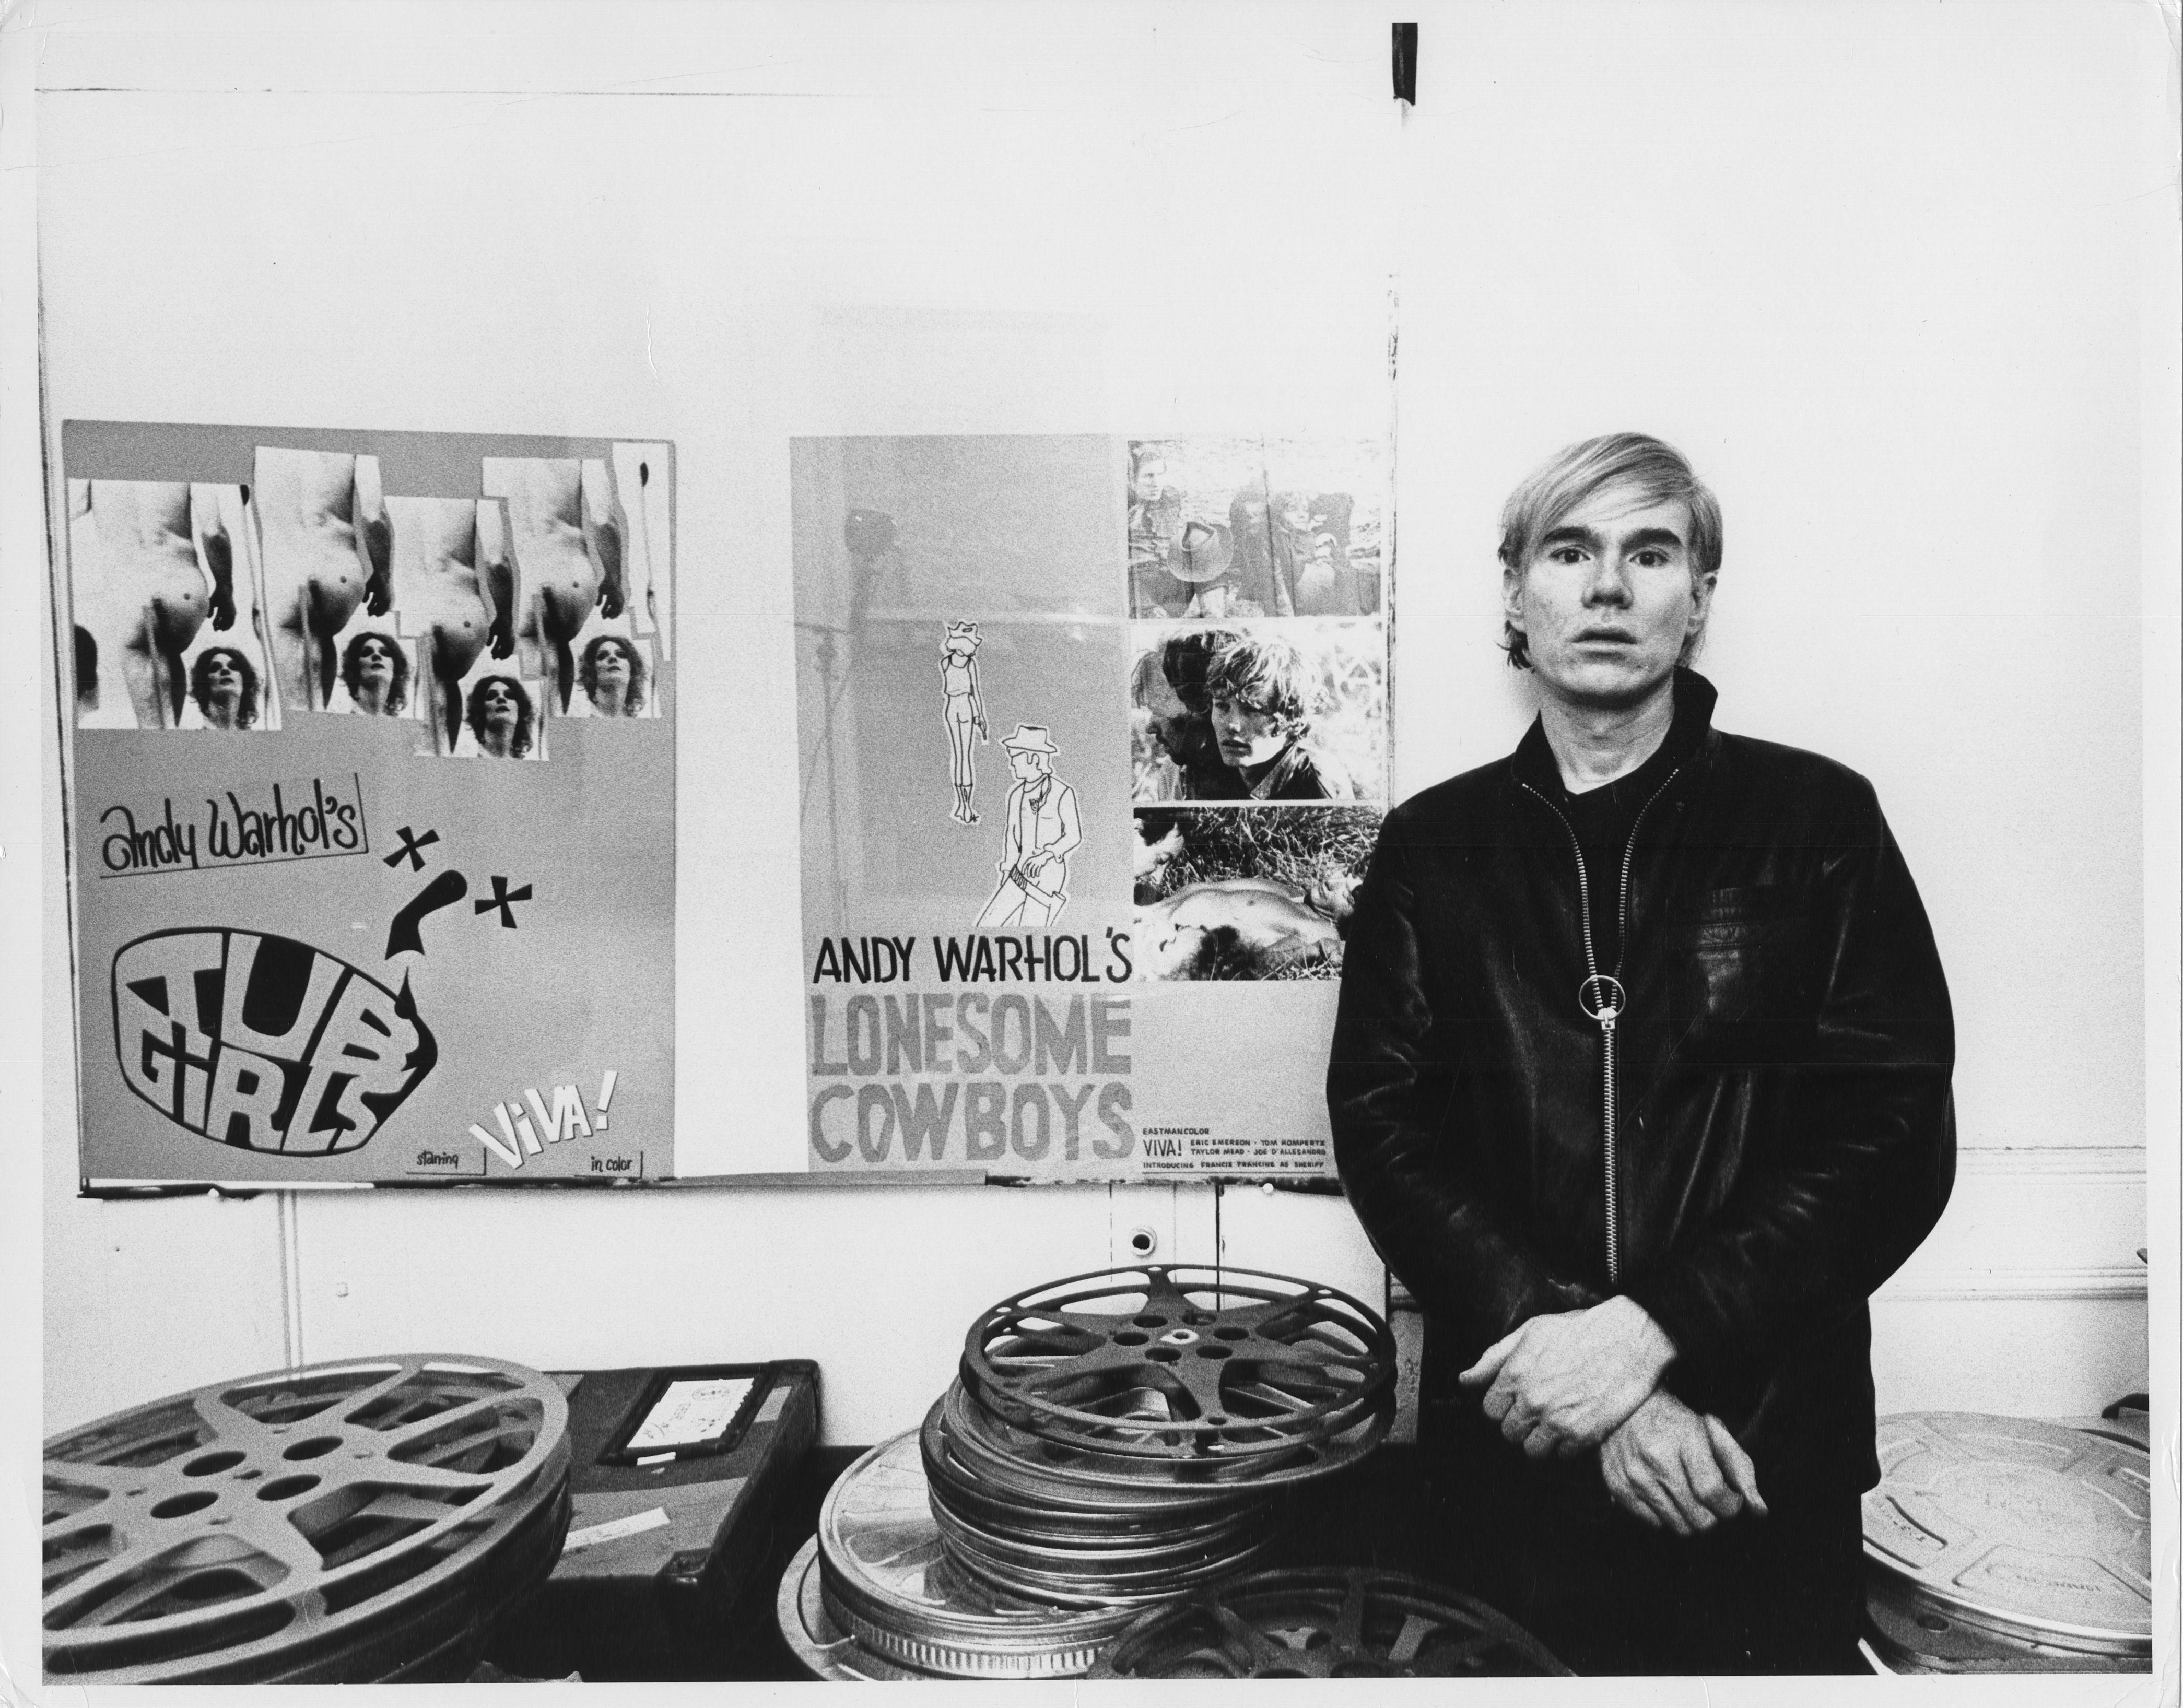 11 x 14 Zoll große alte Silbergelatinefotografie von Andy Warhol in seiner Factory am Union Square West 33 in New York City mit 16-mm-Filmrollen und Plakaten für Tub Girls und Lonesome Cowboys von George Abagnalo, 1968. Dies ist der letzte 11 x 14"